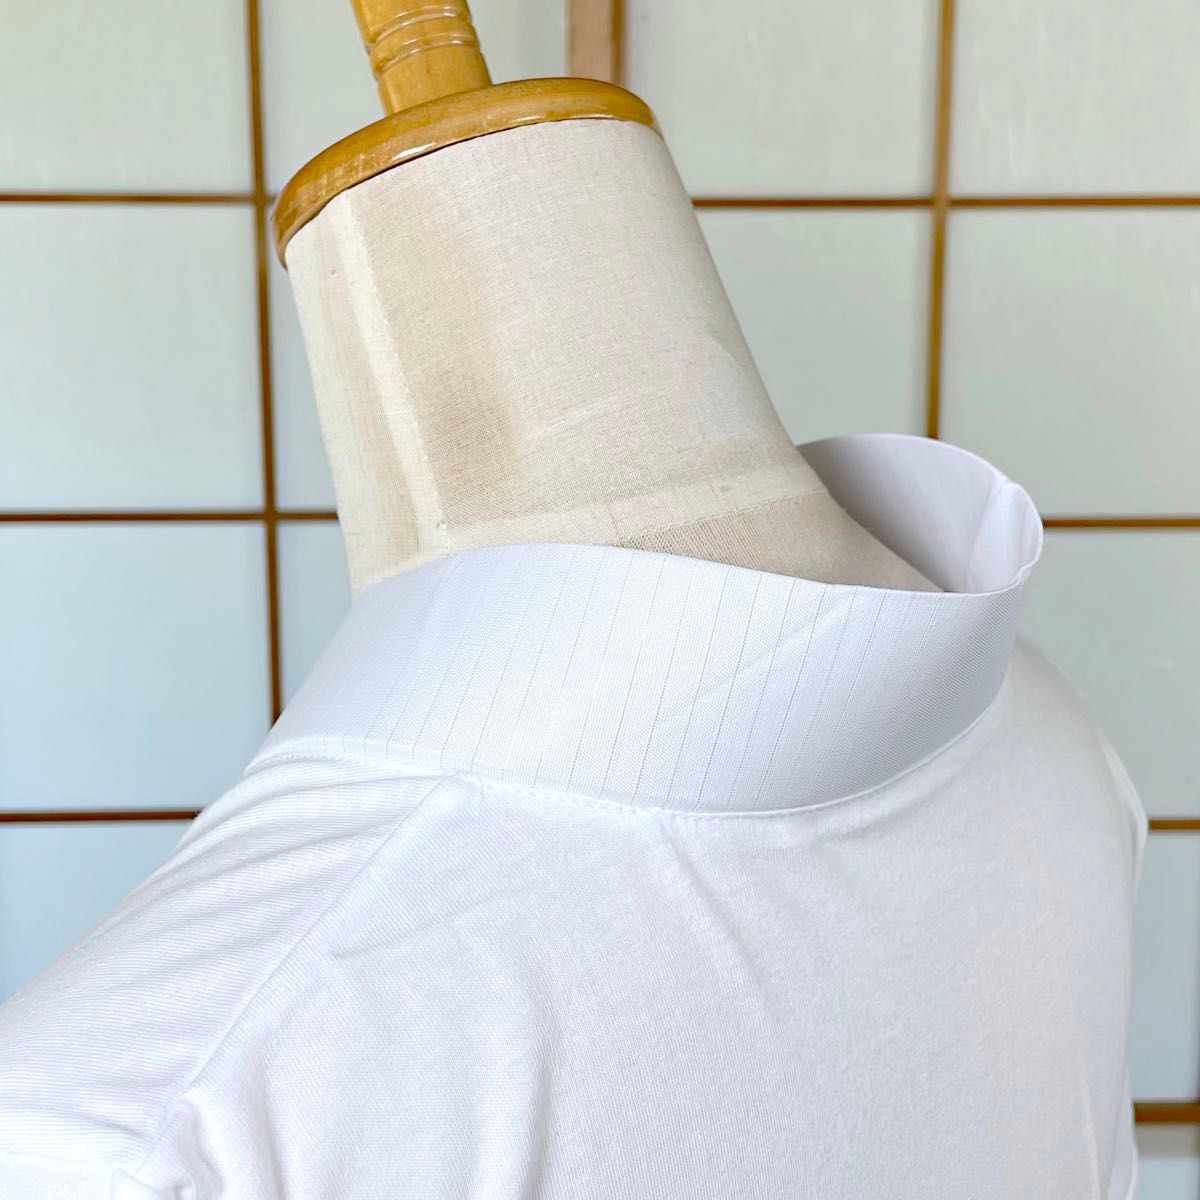 【新品】Tシャツ半襦袢 Lサイズ 夏用 絽衿 着物インナー 日本製 kimonolove